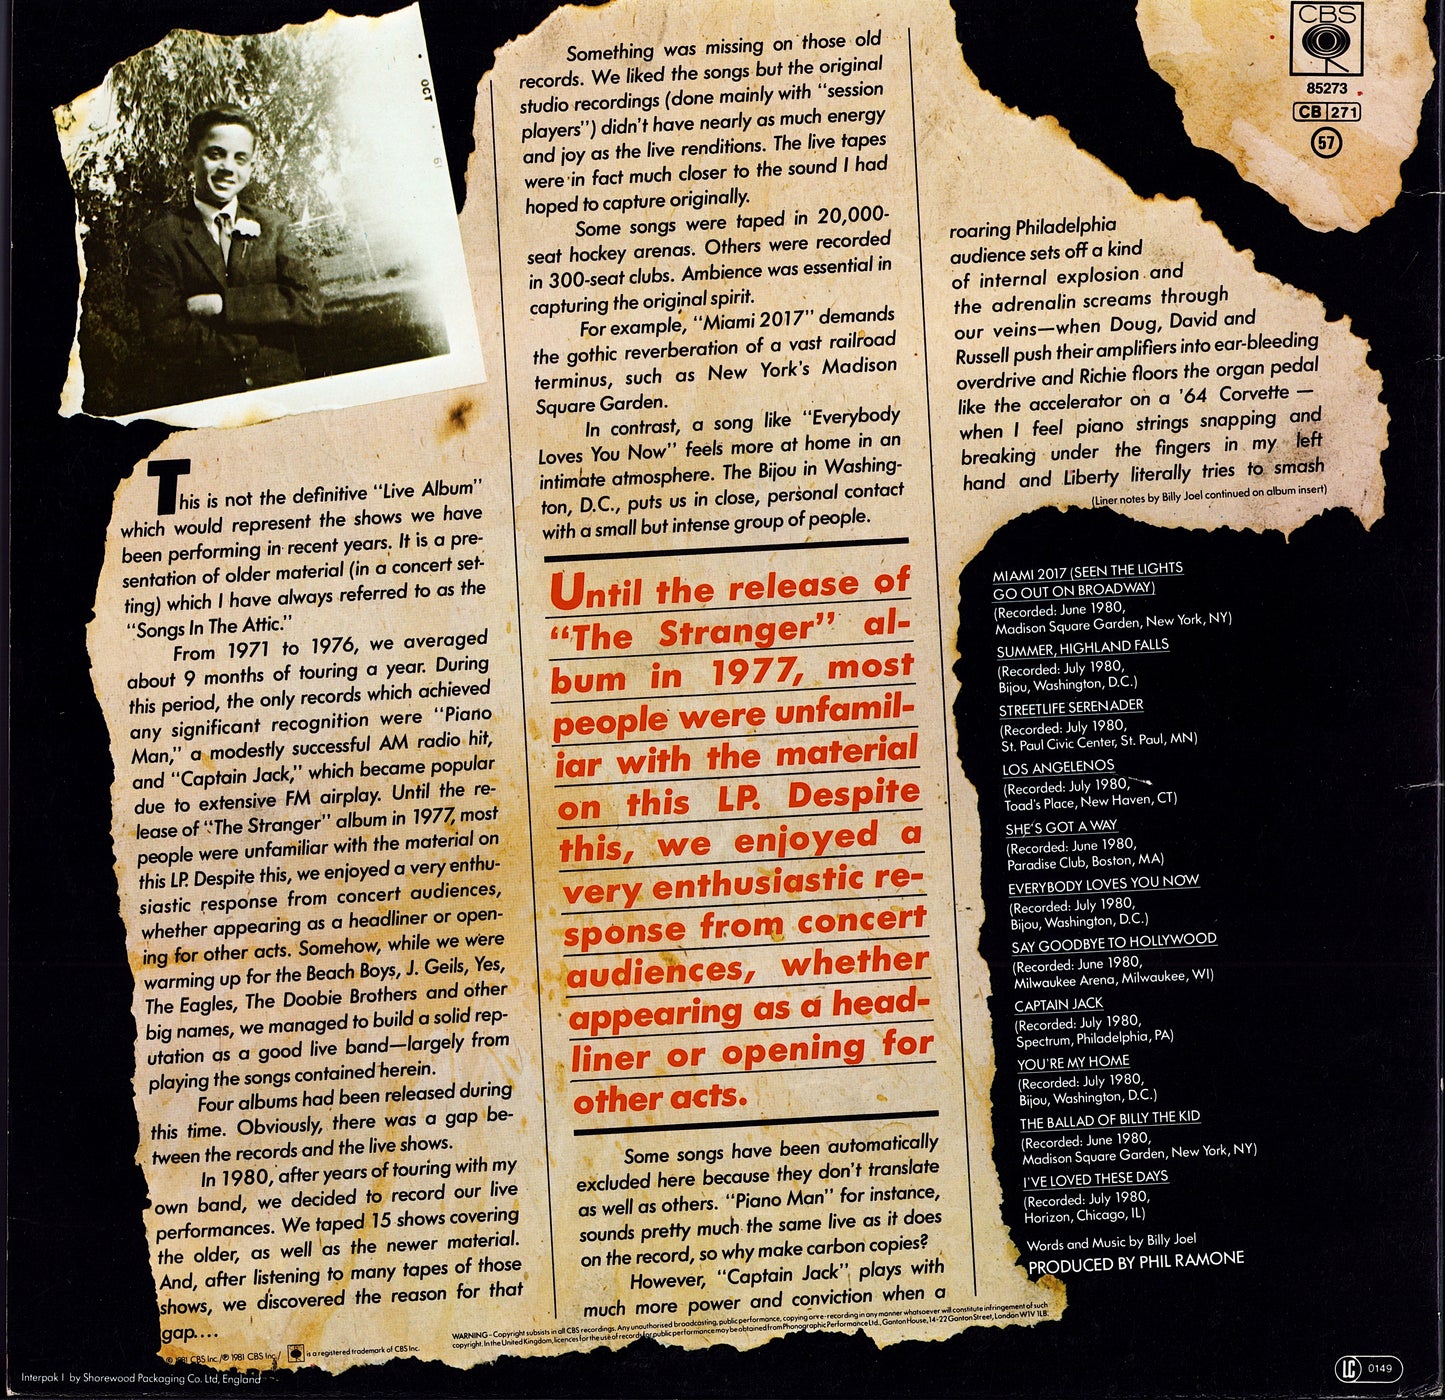 Billy Joel ‎- Songs In The Attic Vinyl LP